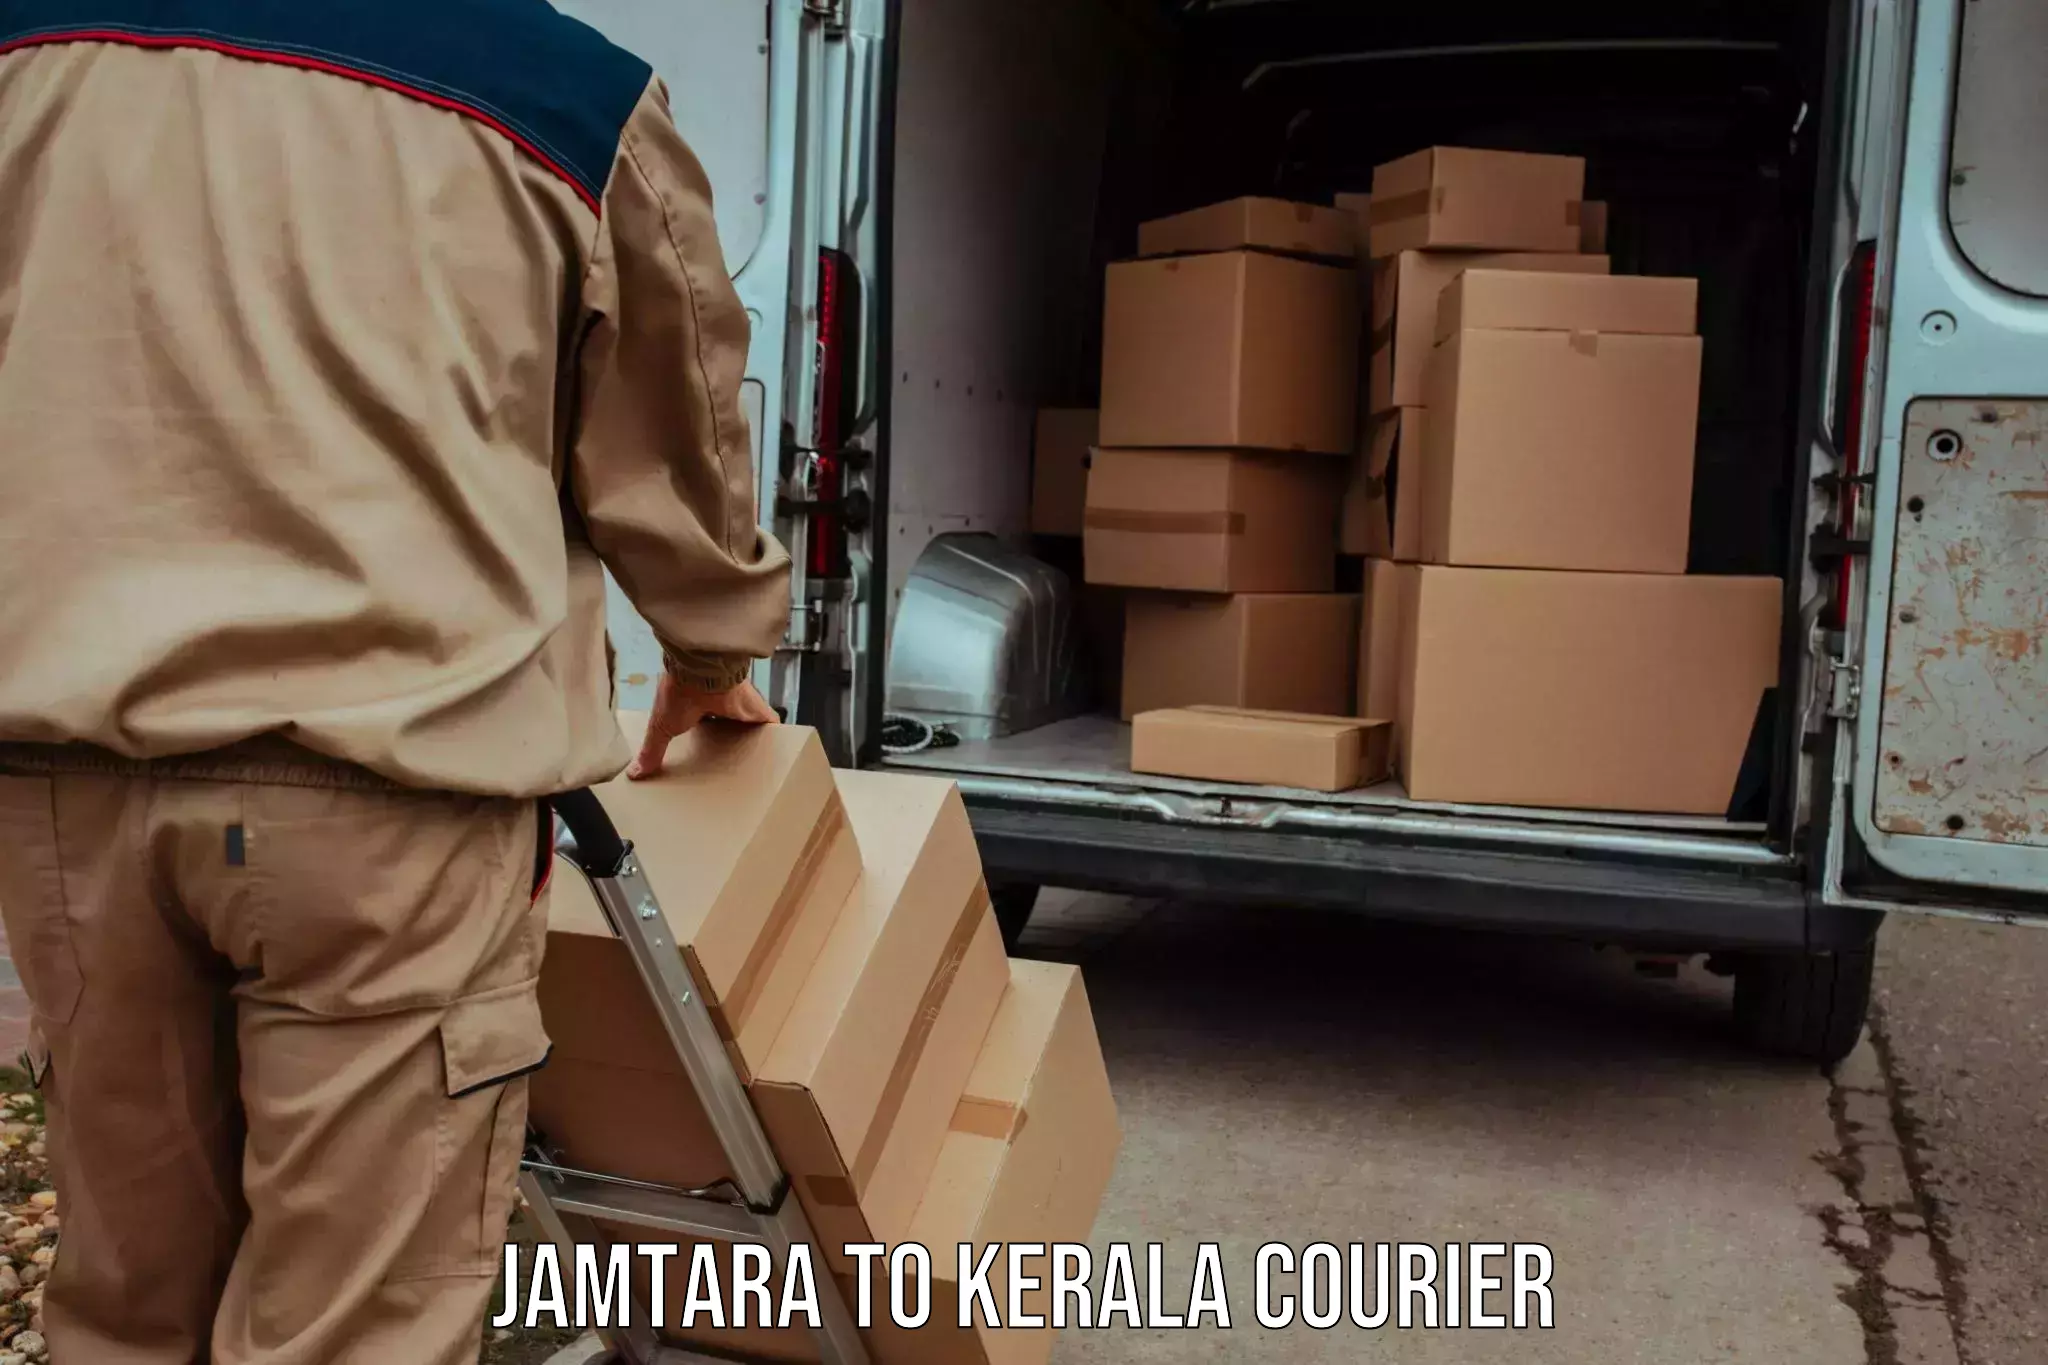 Professional courier handling Jamtara to Mundakayam